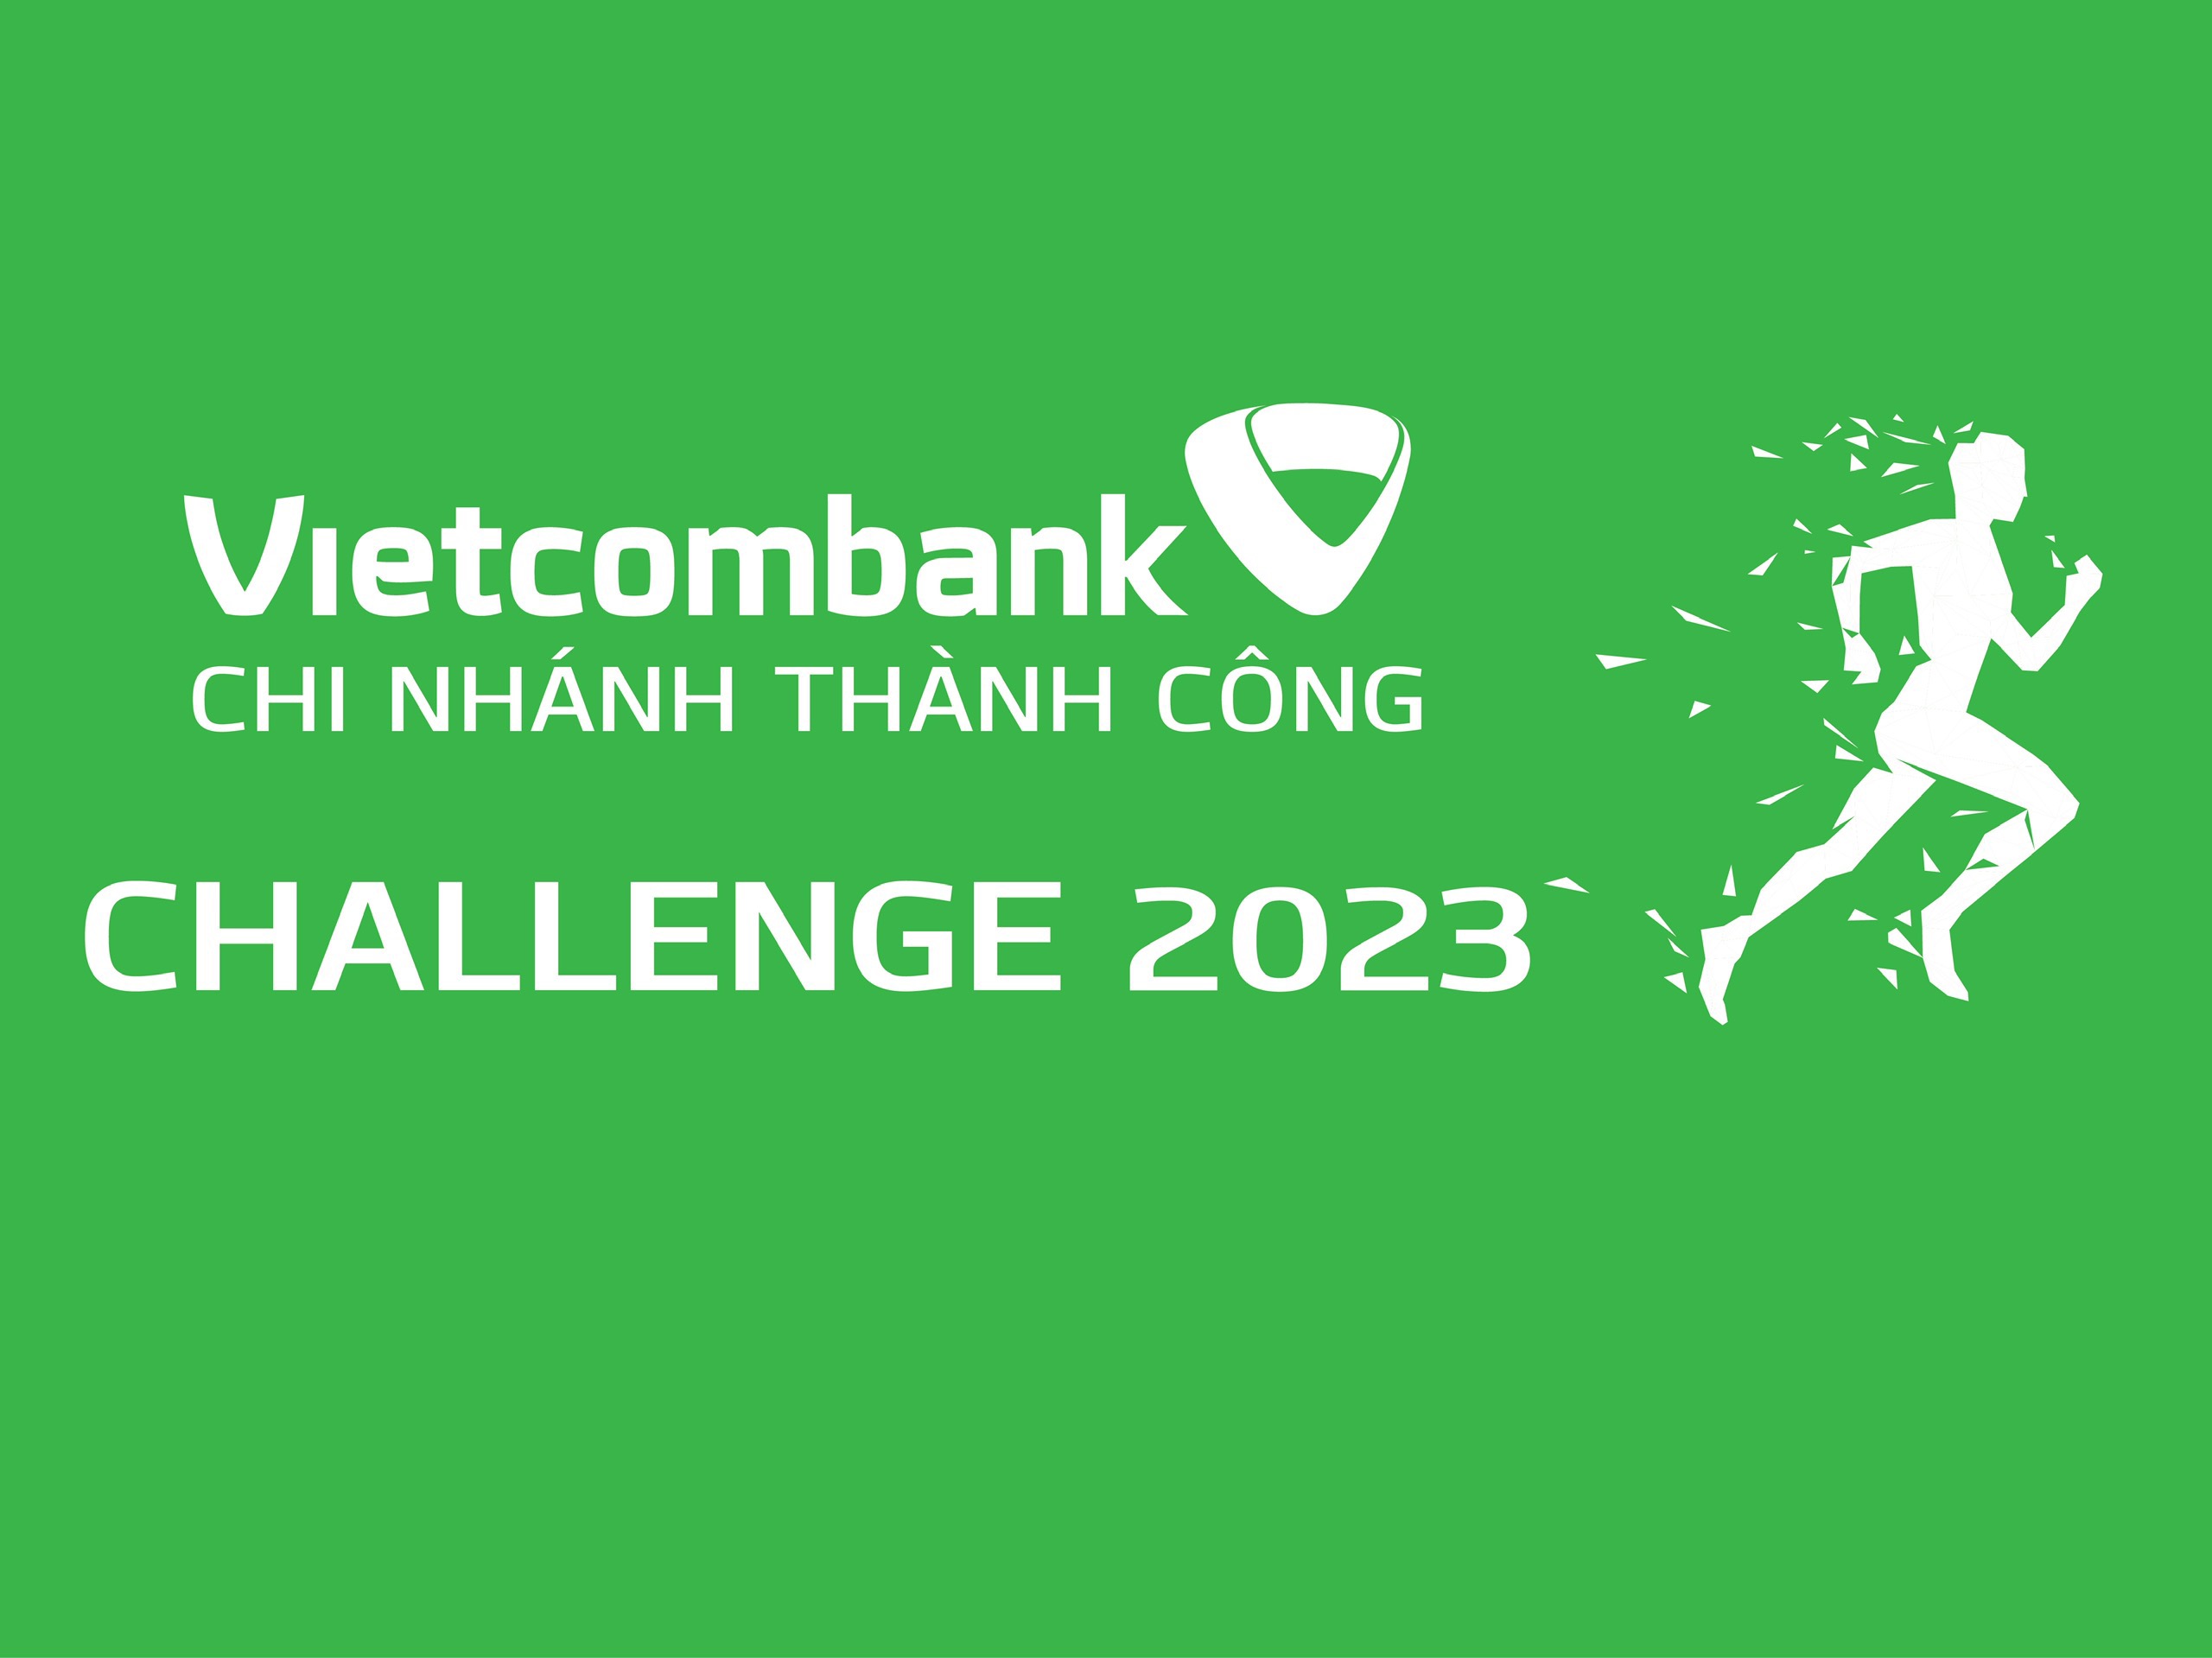 VCB Thành Công Challenge 2023 - Tuần 1